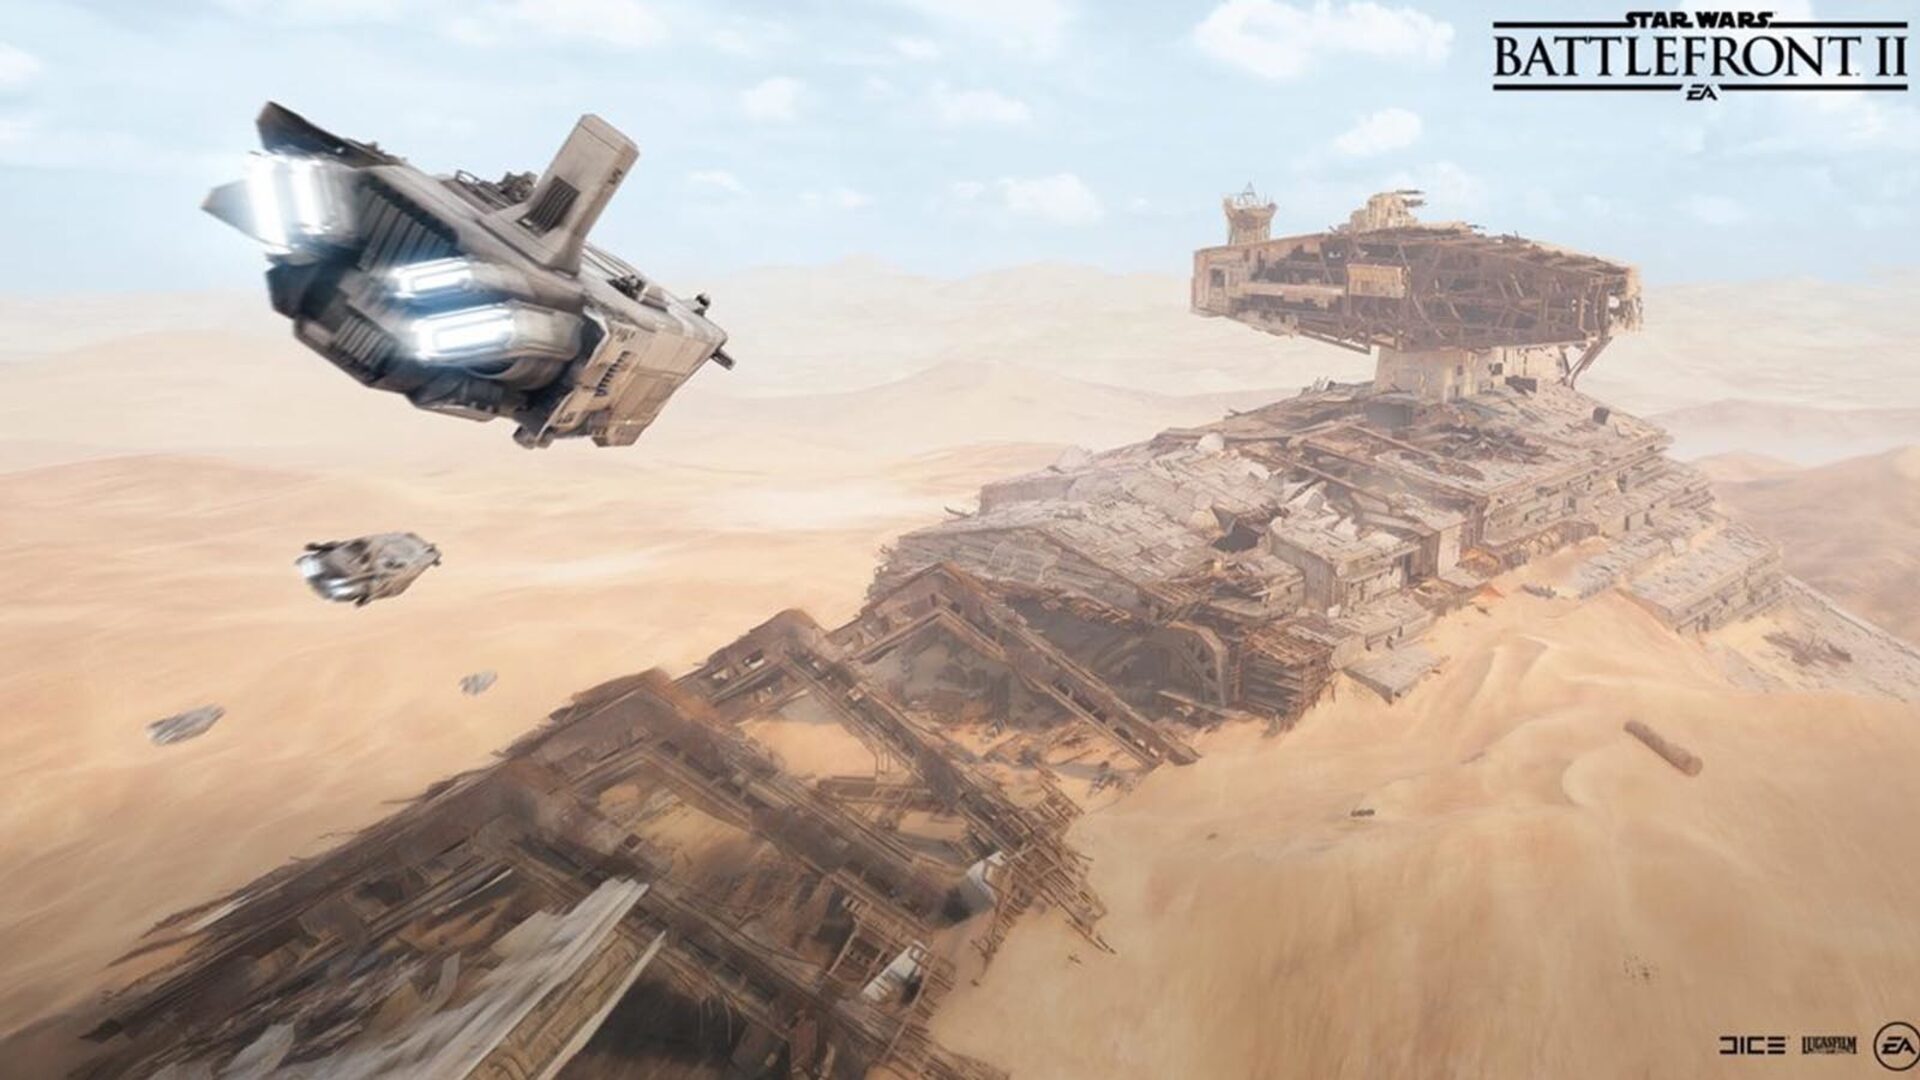  Star Wars Battlefront II : Celebration Edition - Steam